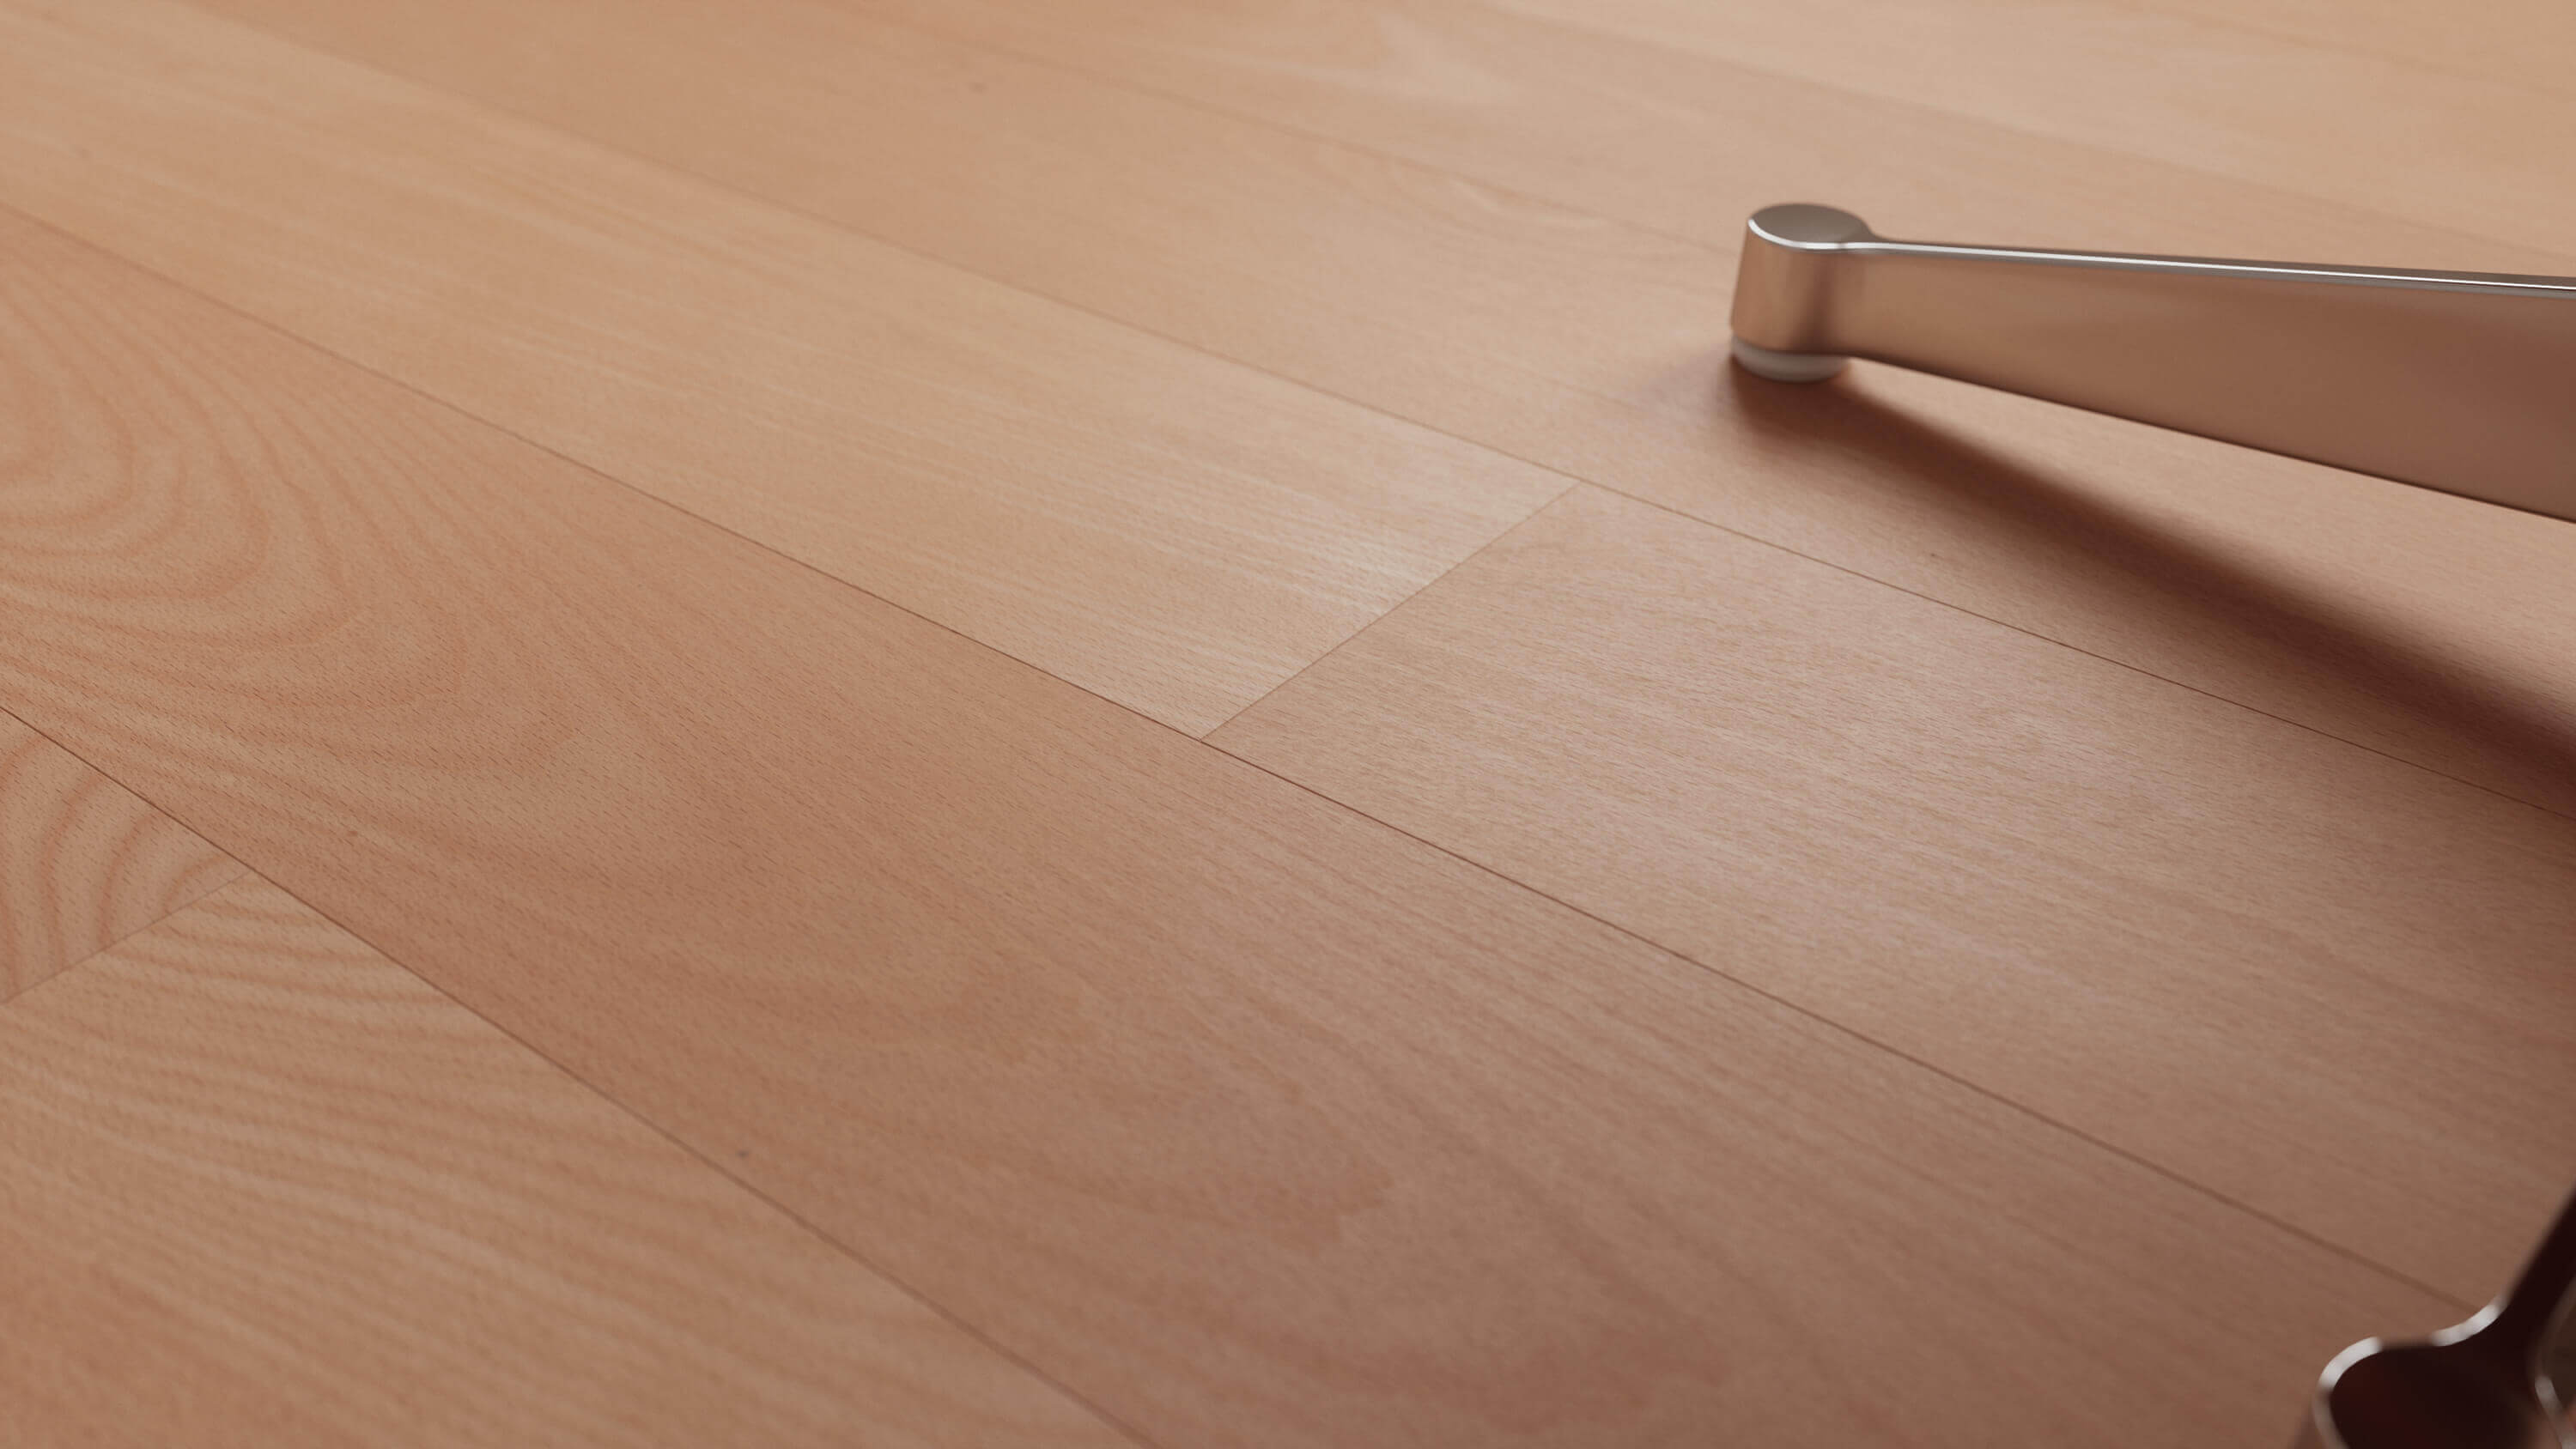 seamless wooden floor texture in beech wood